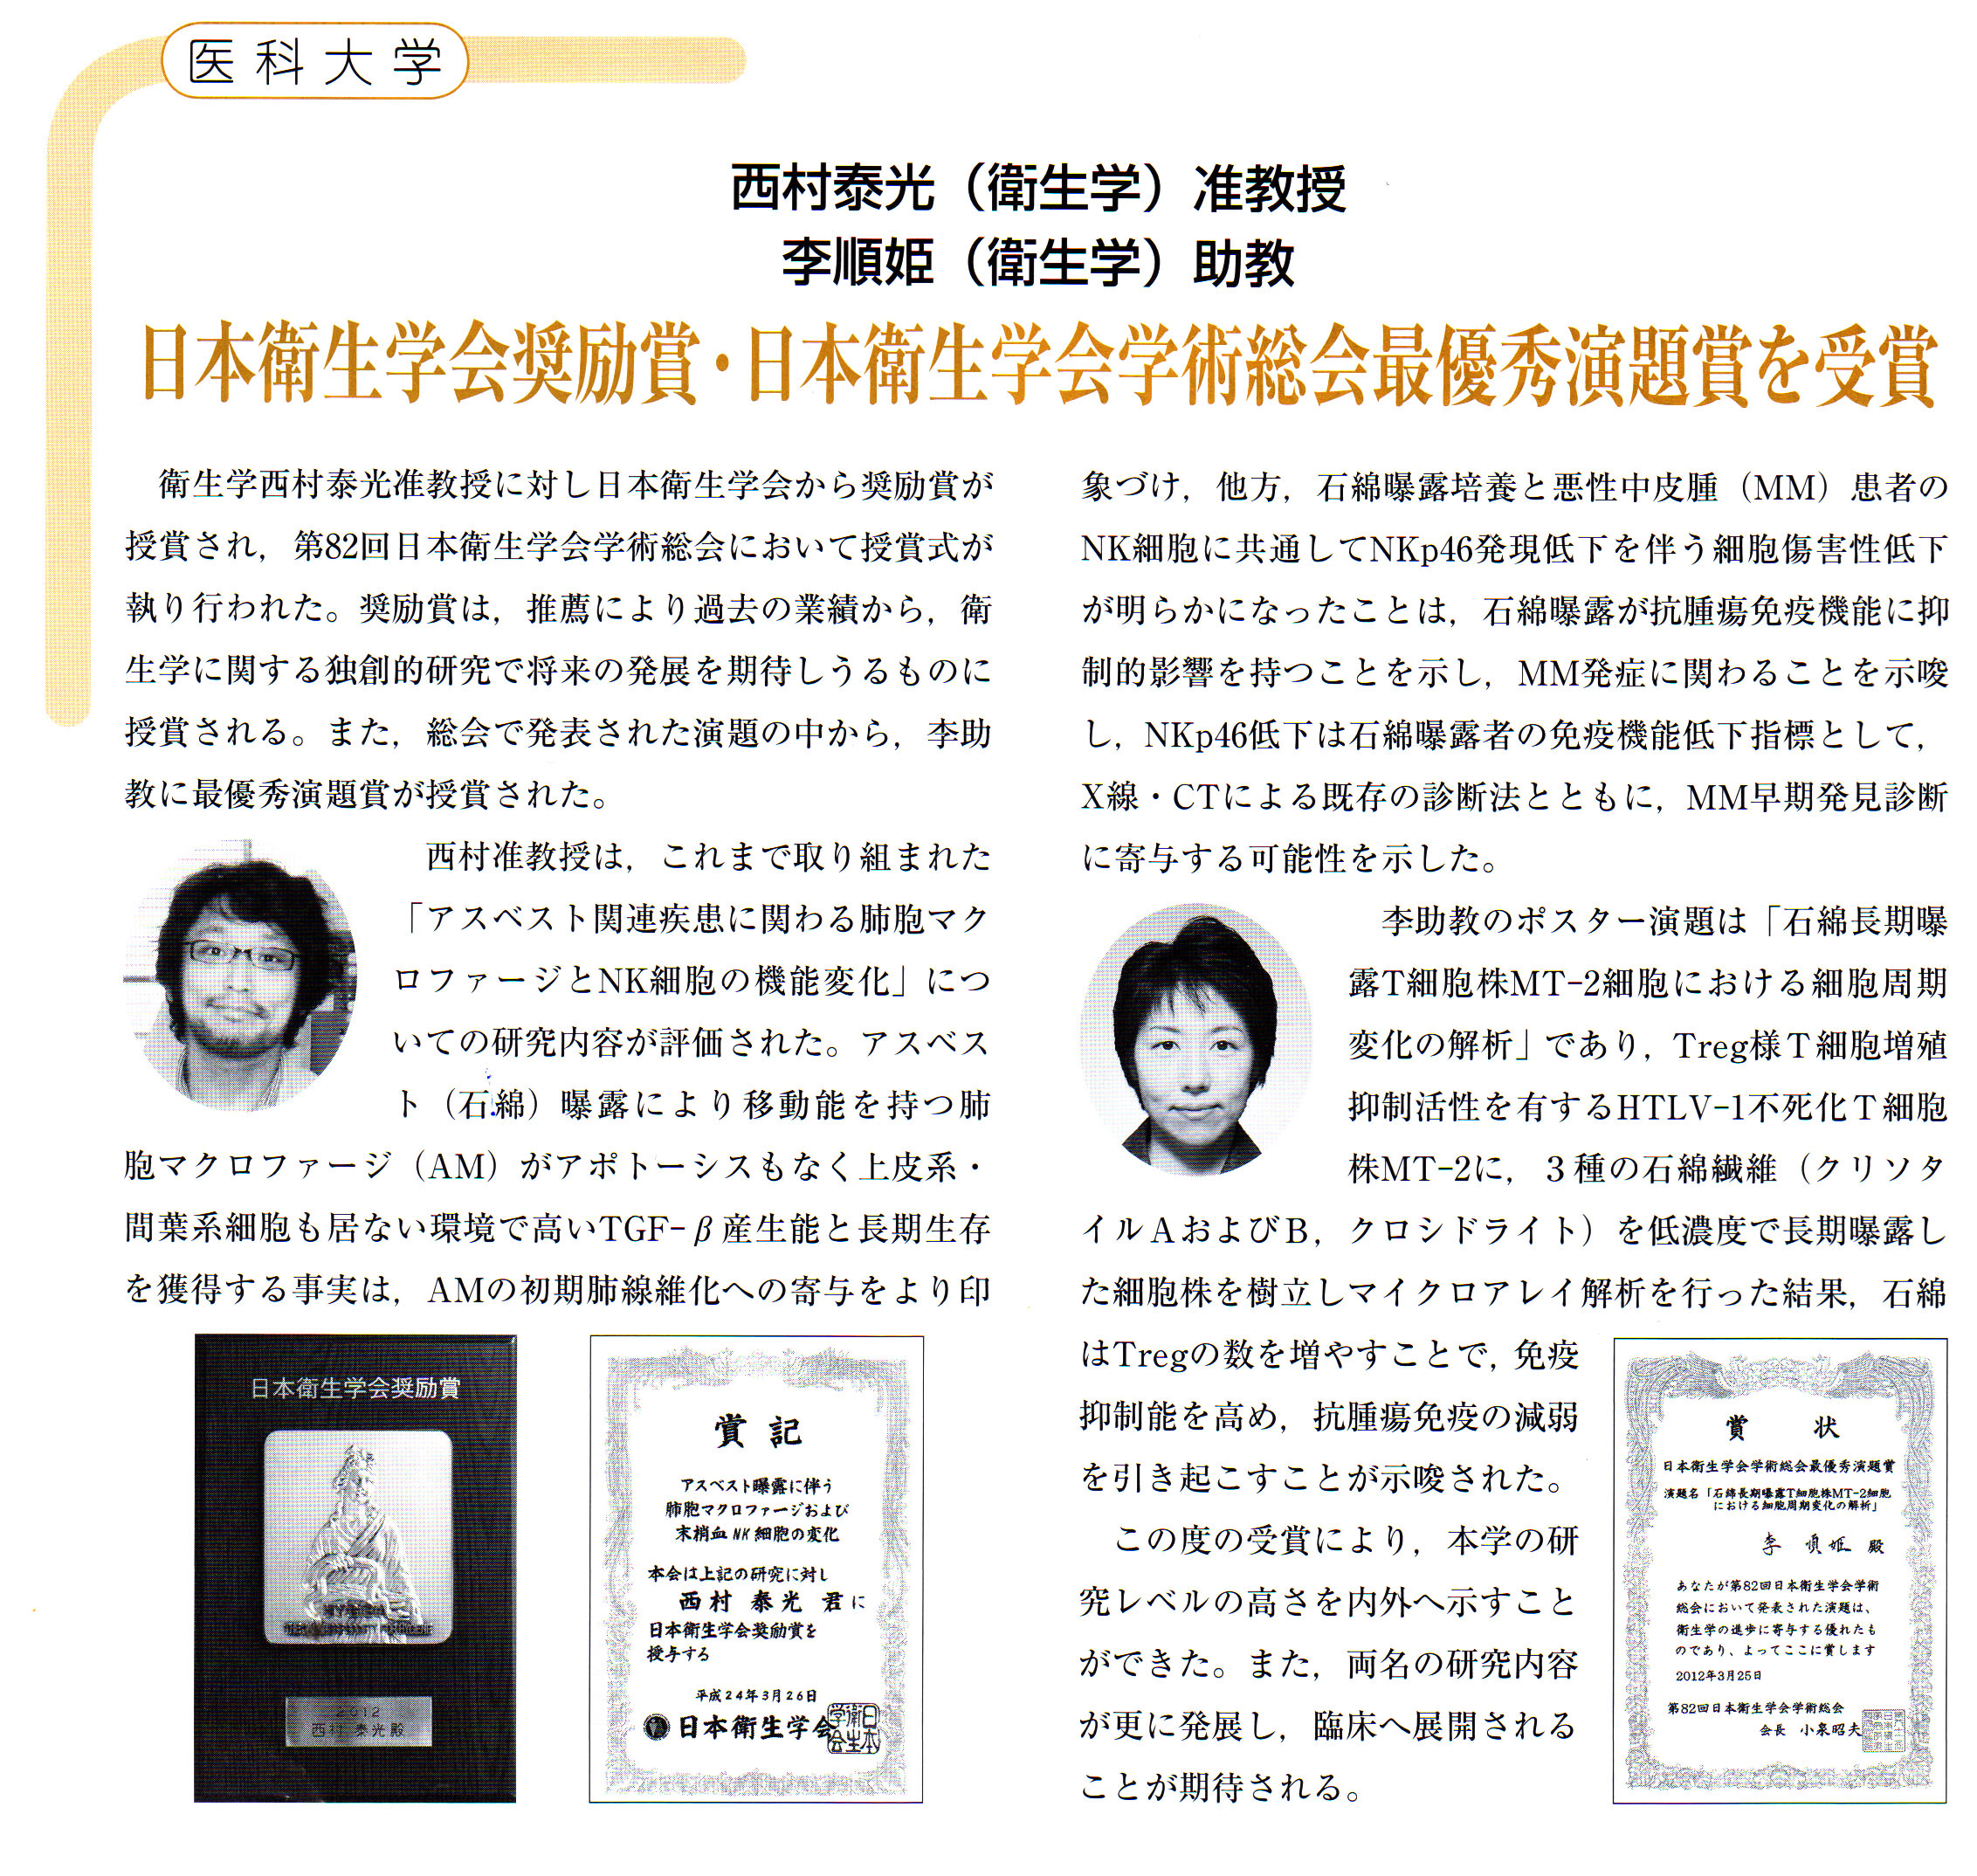 そして，3月の日本衛生学会での西村先生，李先生の受賞記事が記載されていました。